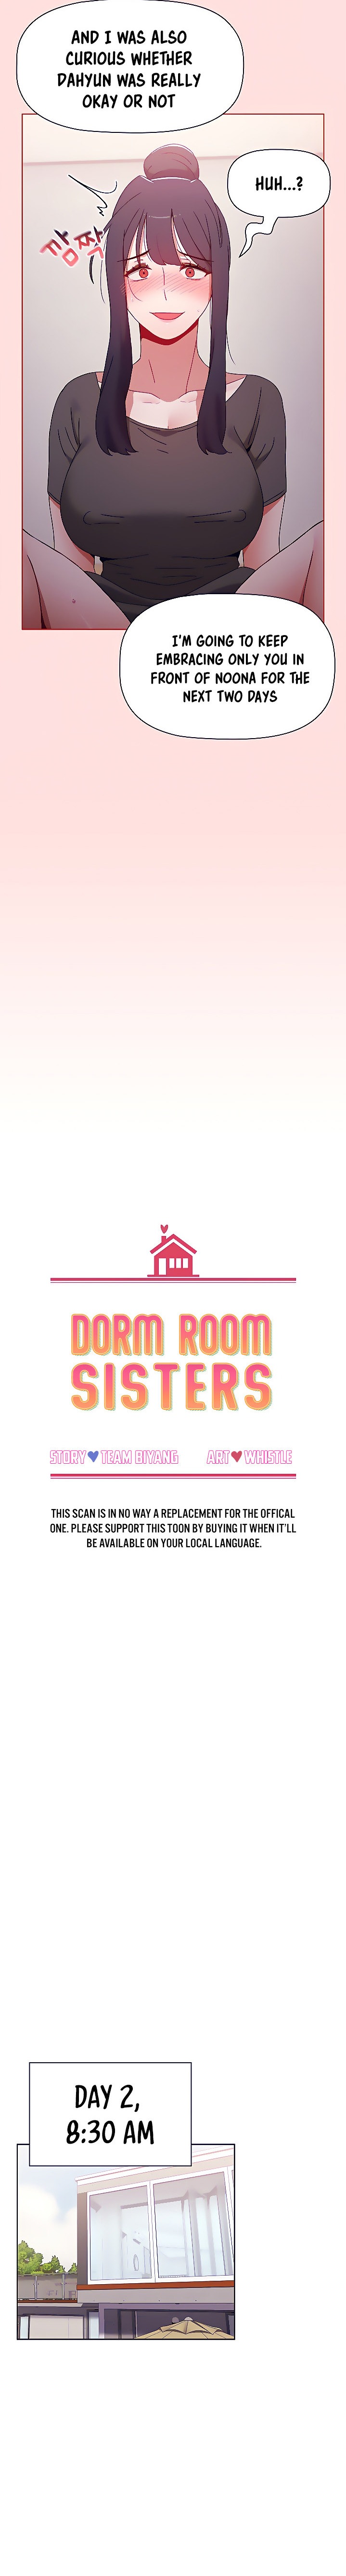 Watch image manhwa Dorm Room Sisters - Chapter 57 - 04e4ed6aa42736573c - ManhwaXX.net